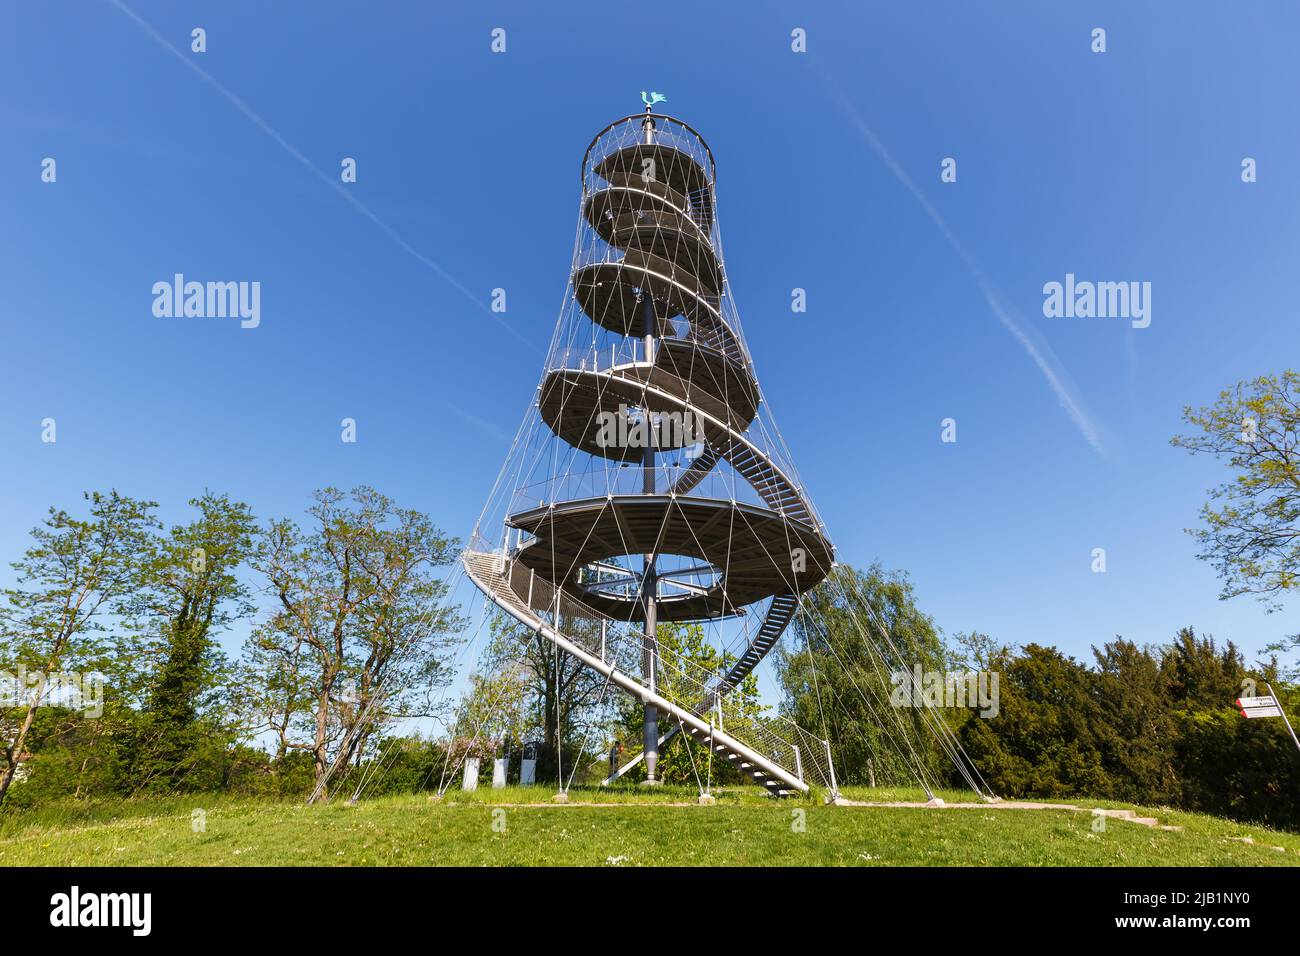 Tower in Killesberg park garden Stuttgart, Germany Stock Photo